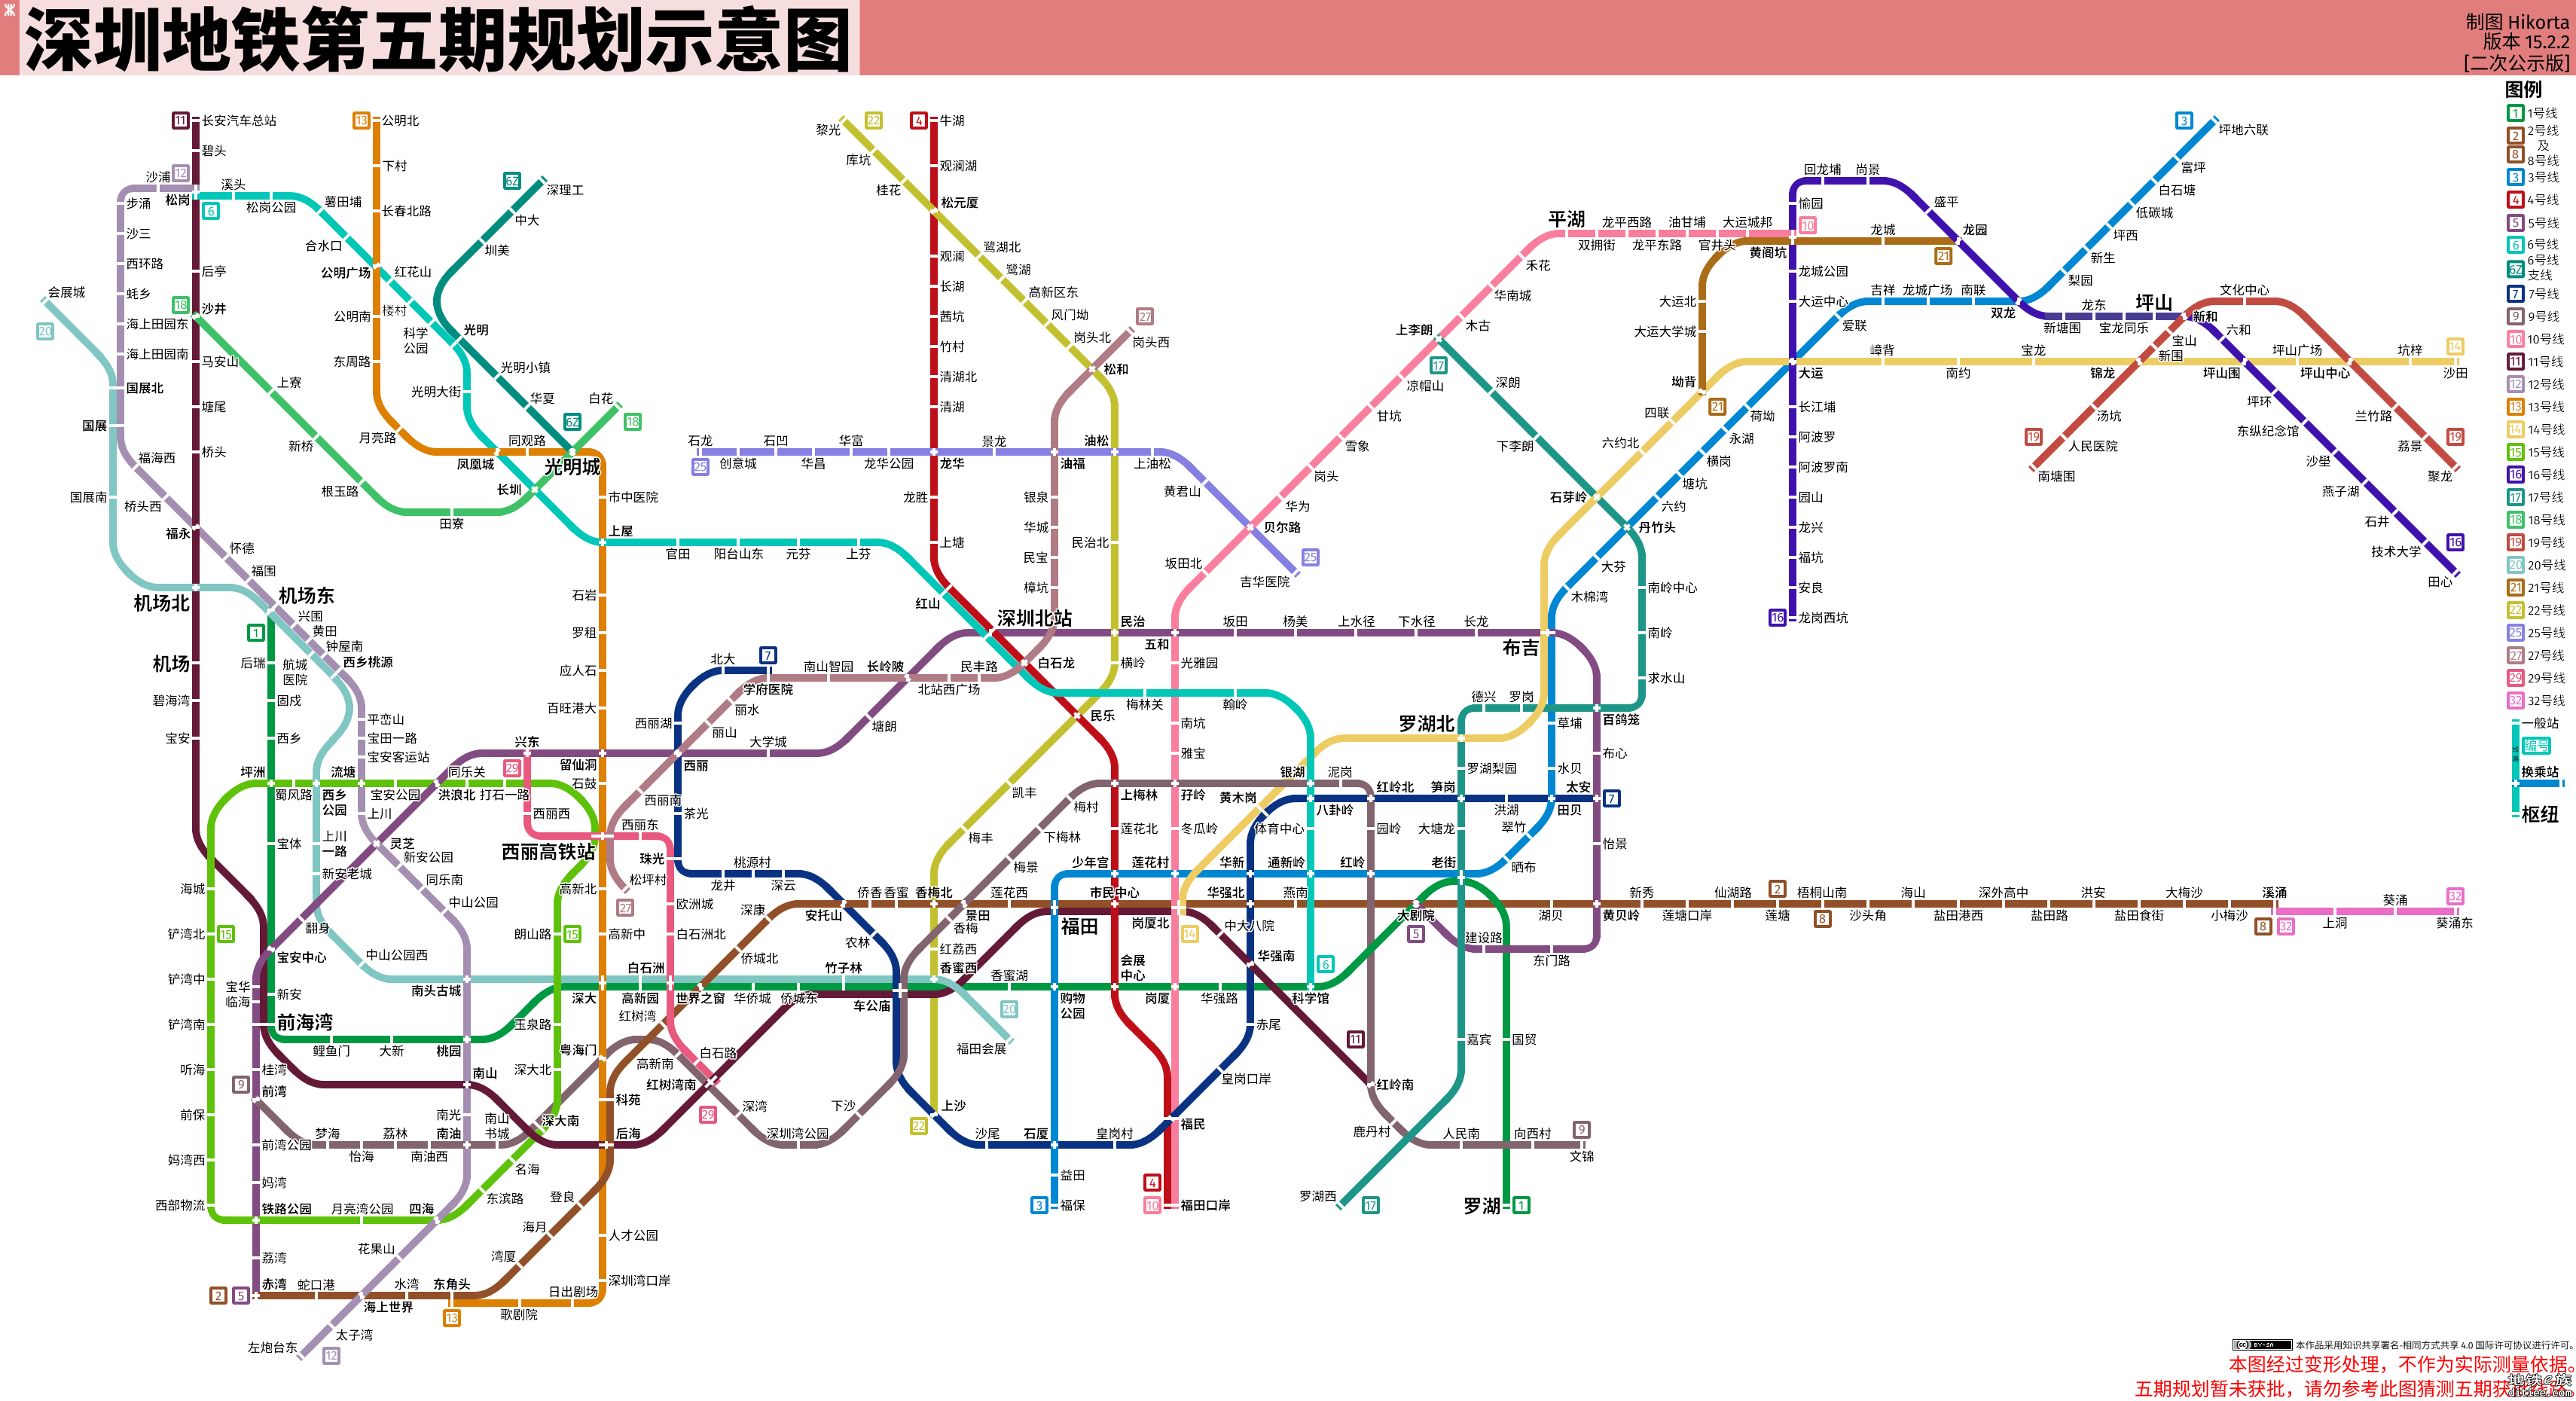 【皮鸭制图】深圳地铁第五期规划示意图第二次公示版